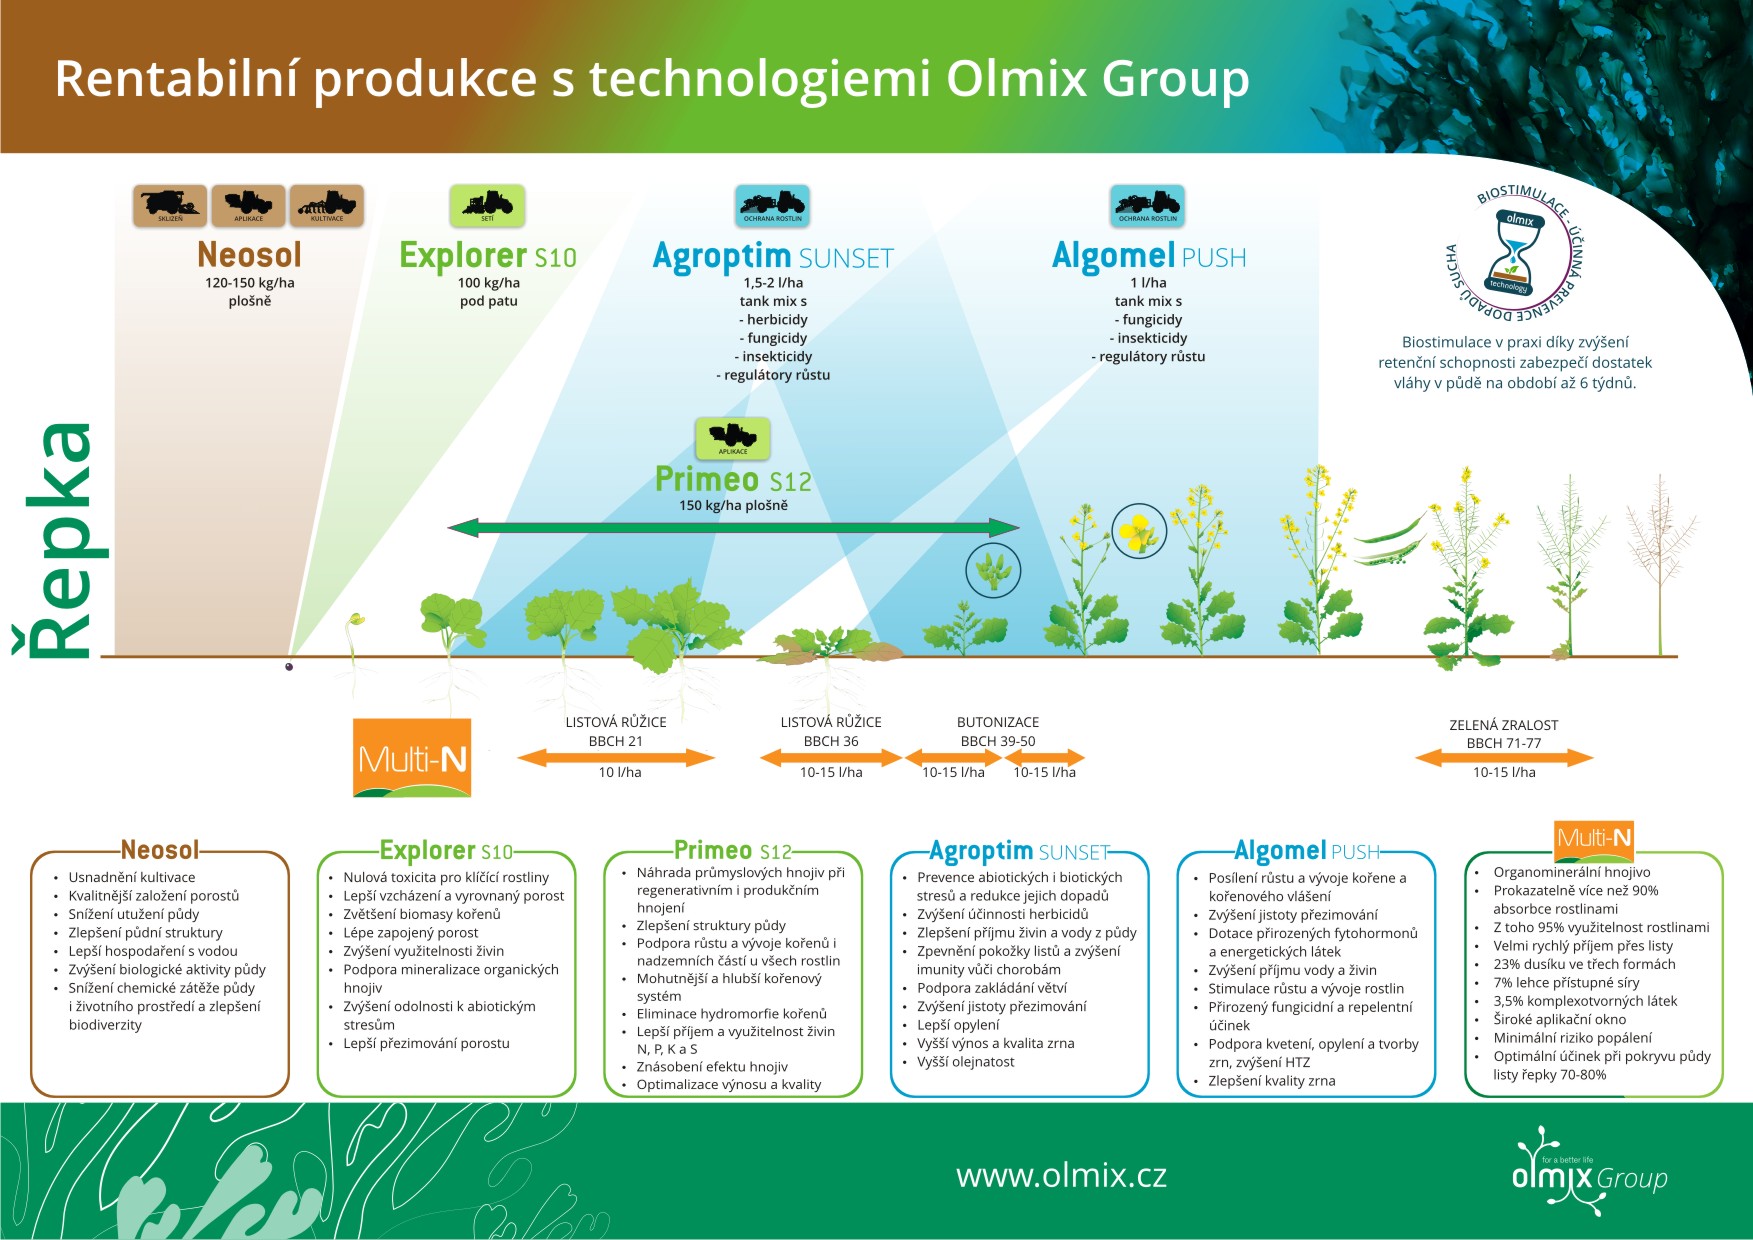 Olmix Group